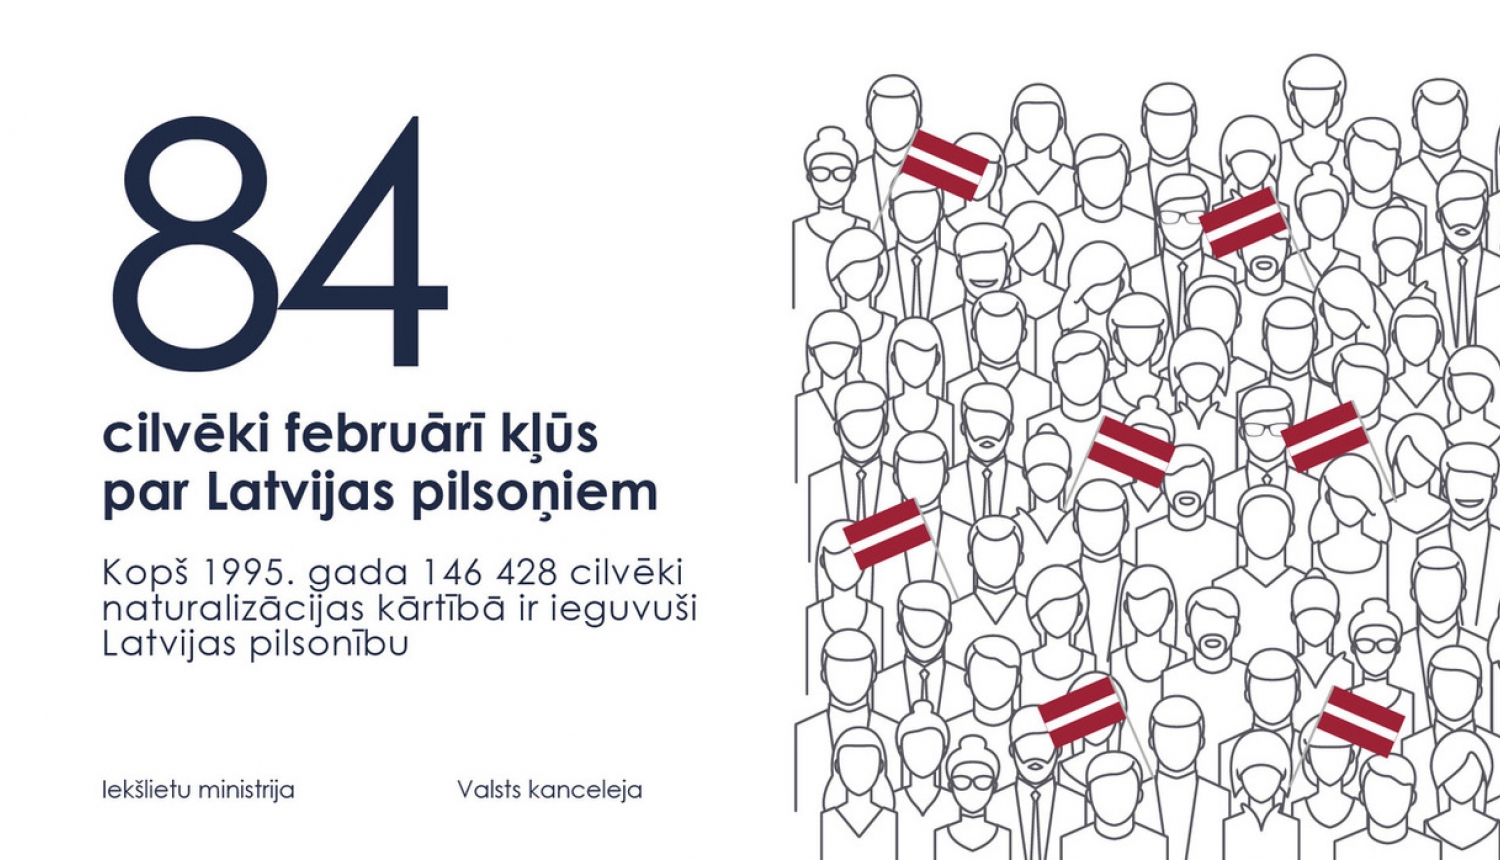 Latvijas pilsonībā uzņemtas 84 personas